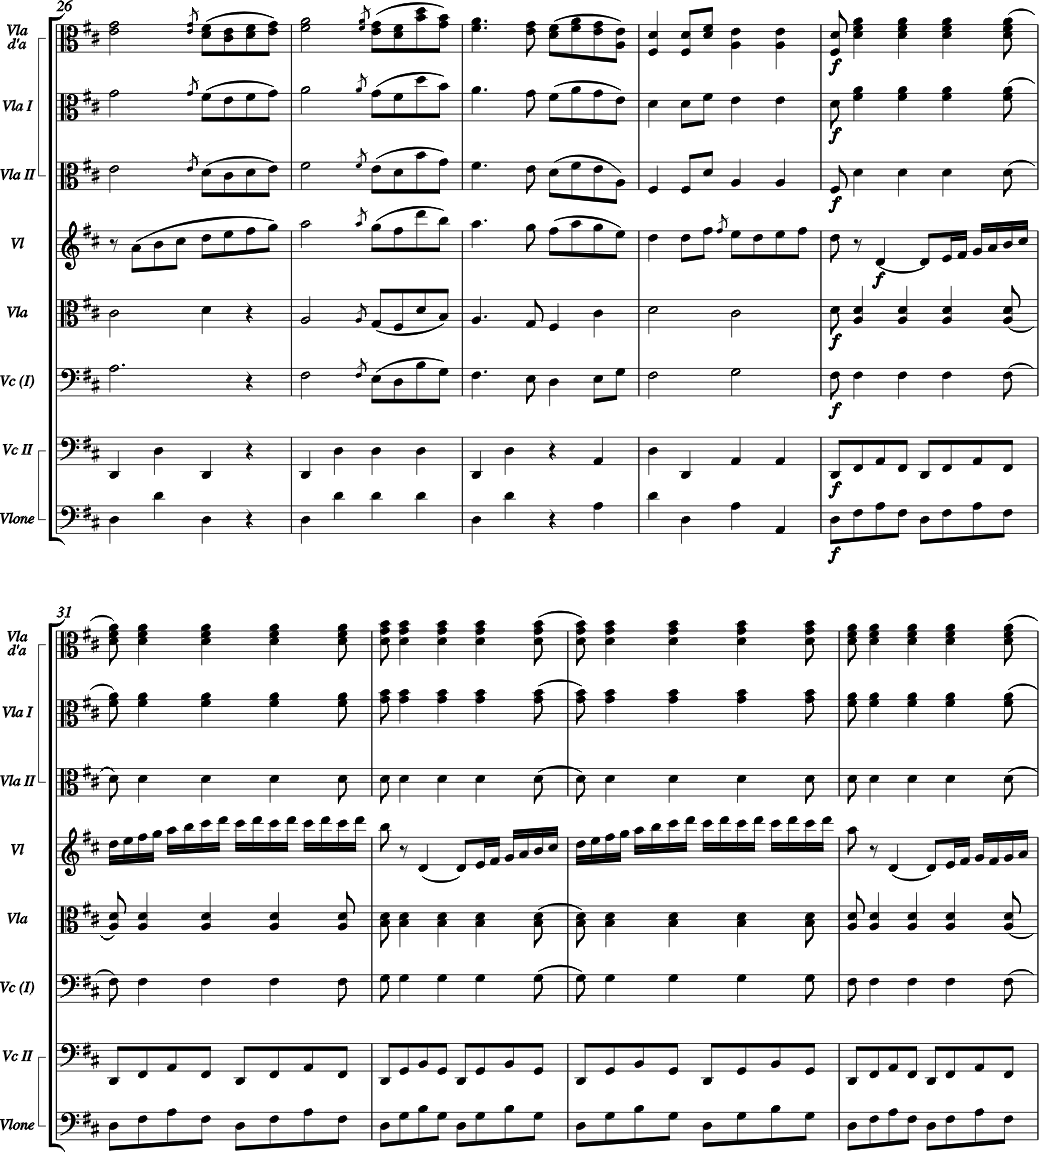 von Eybler Quintette II / Sextuor II Re majeur